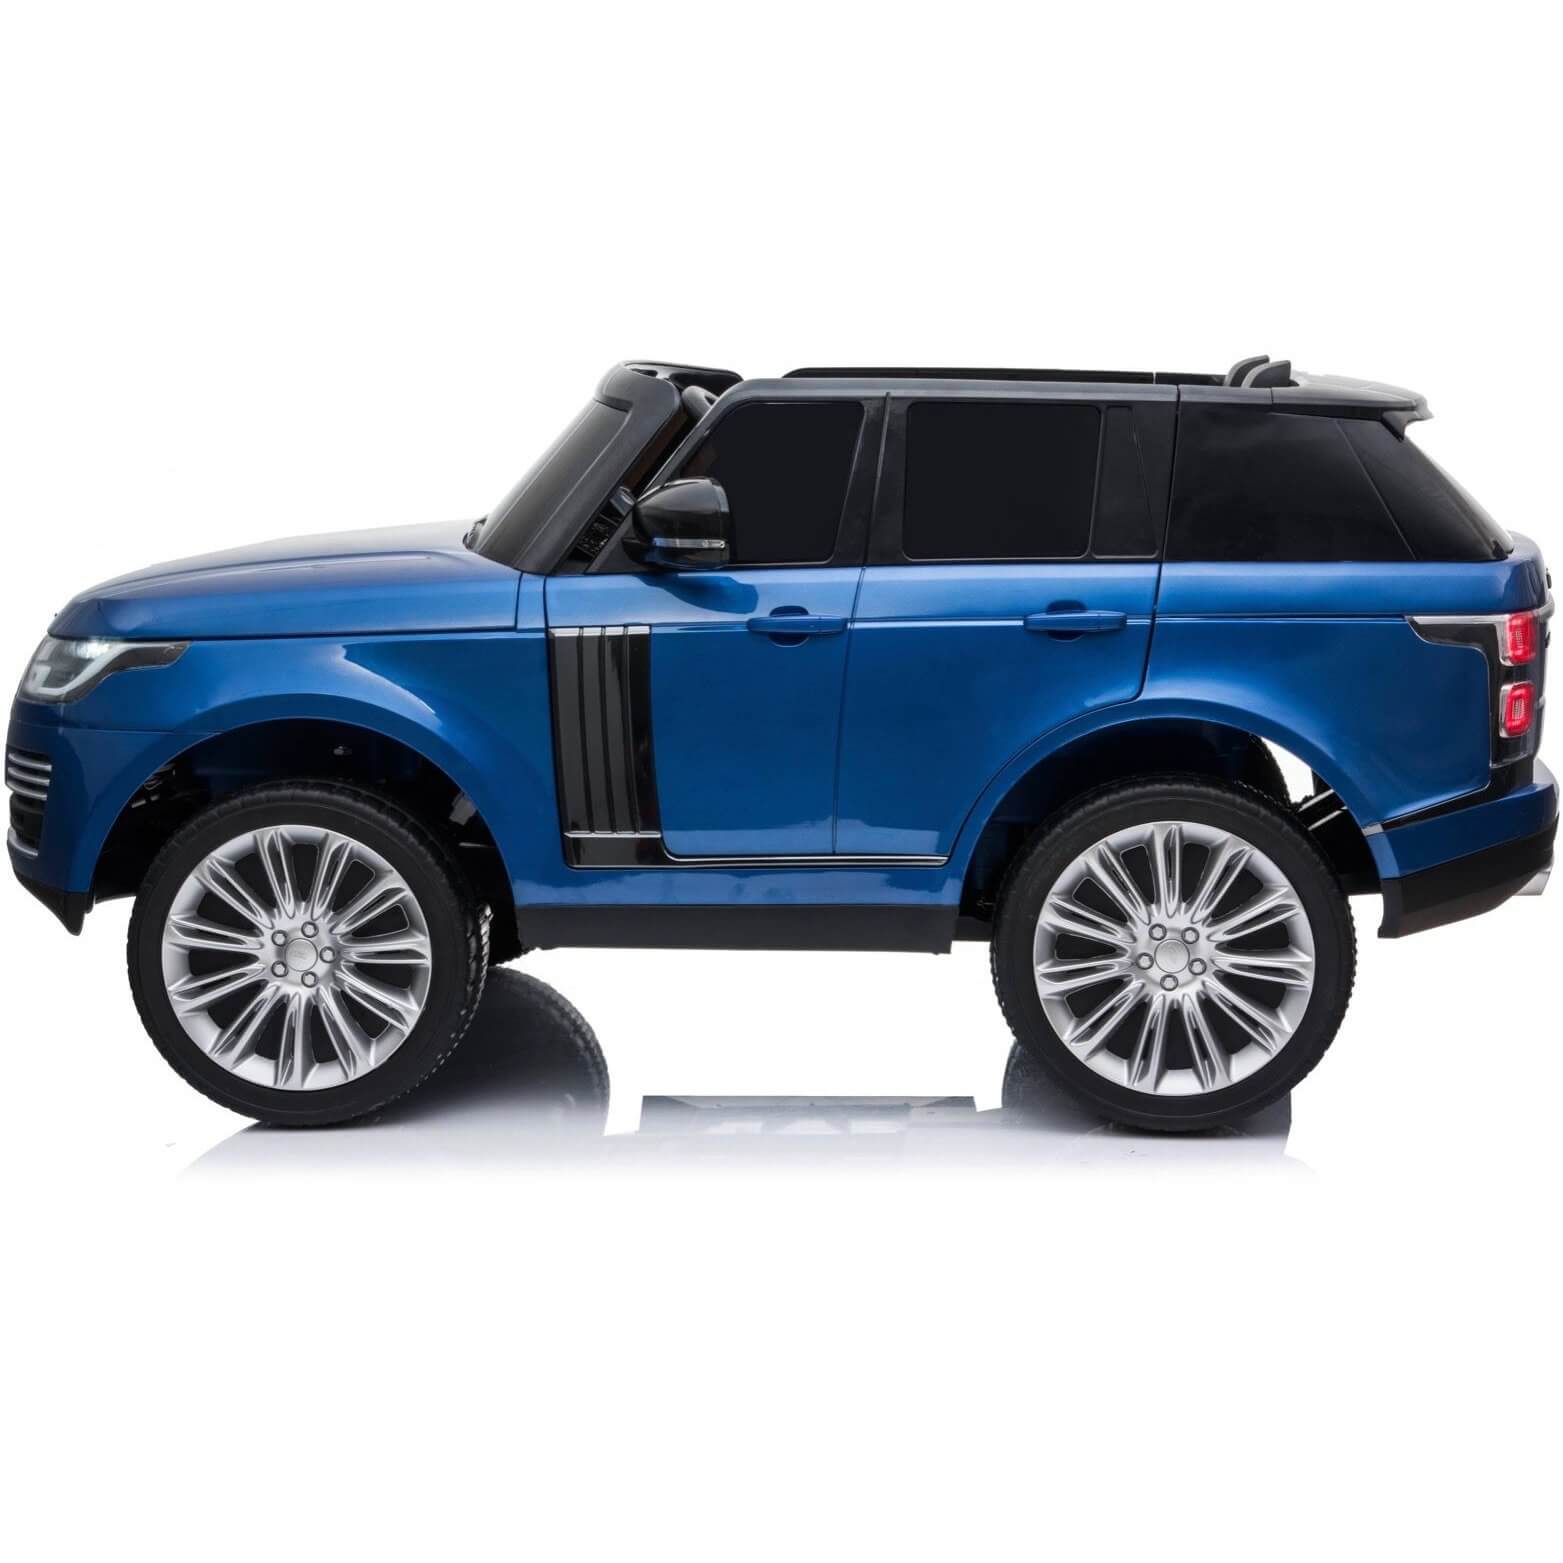 Blue Range Rover for Kids